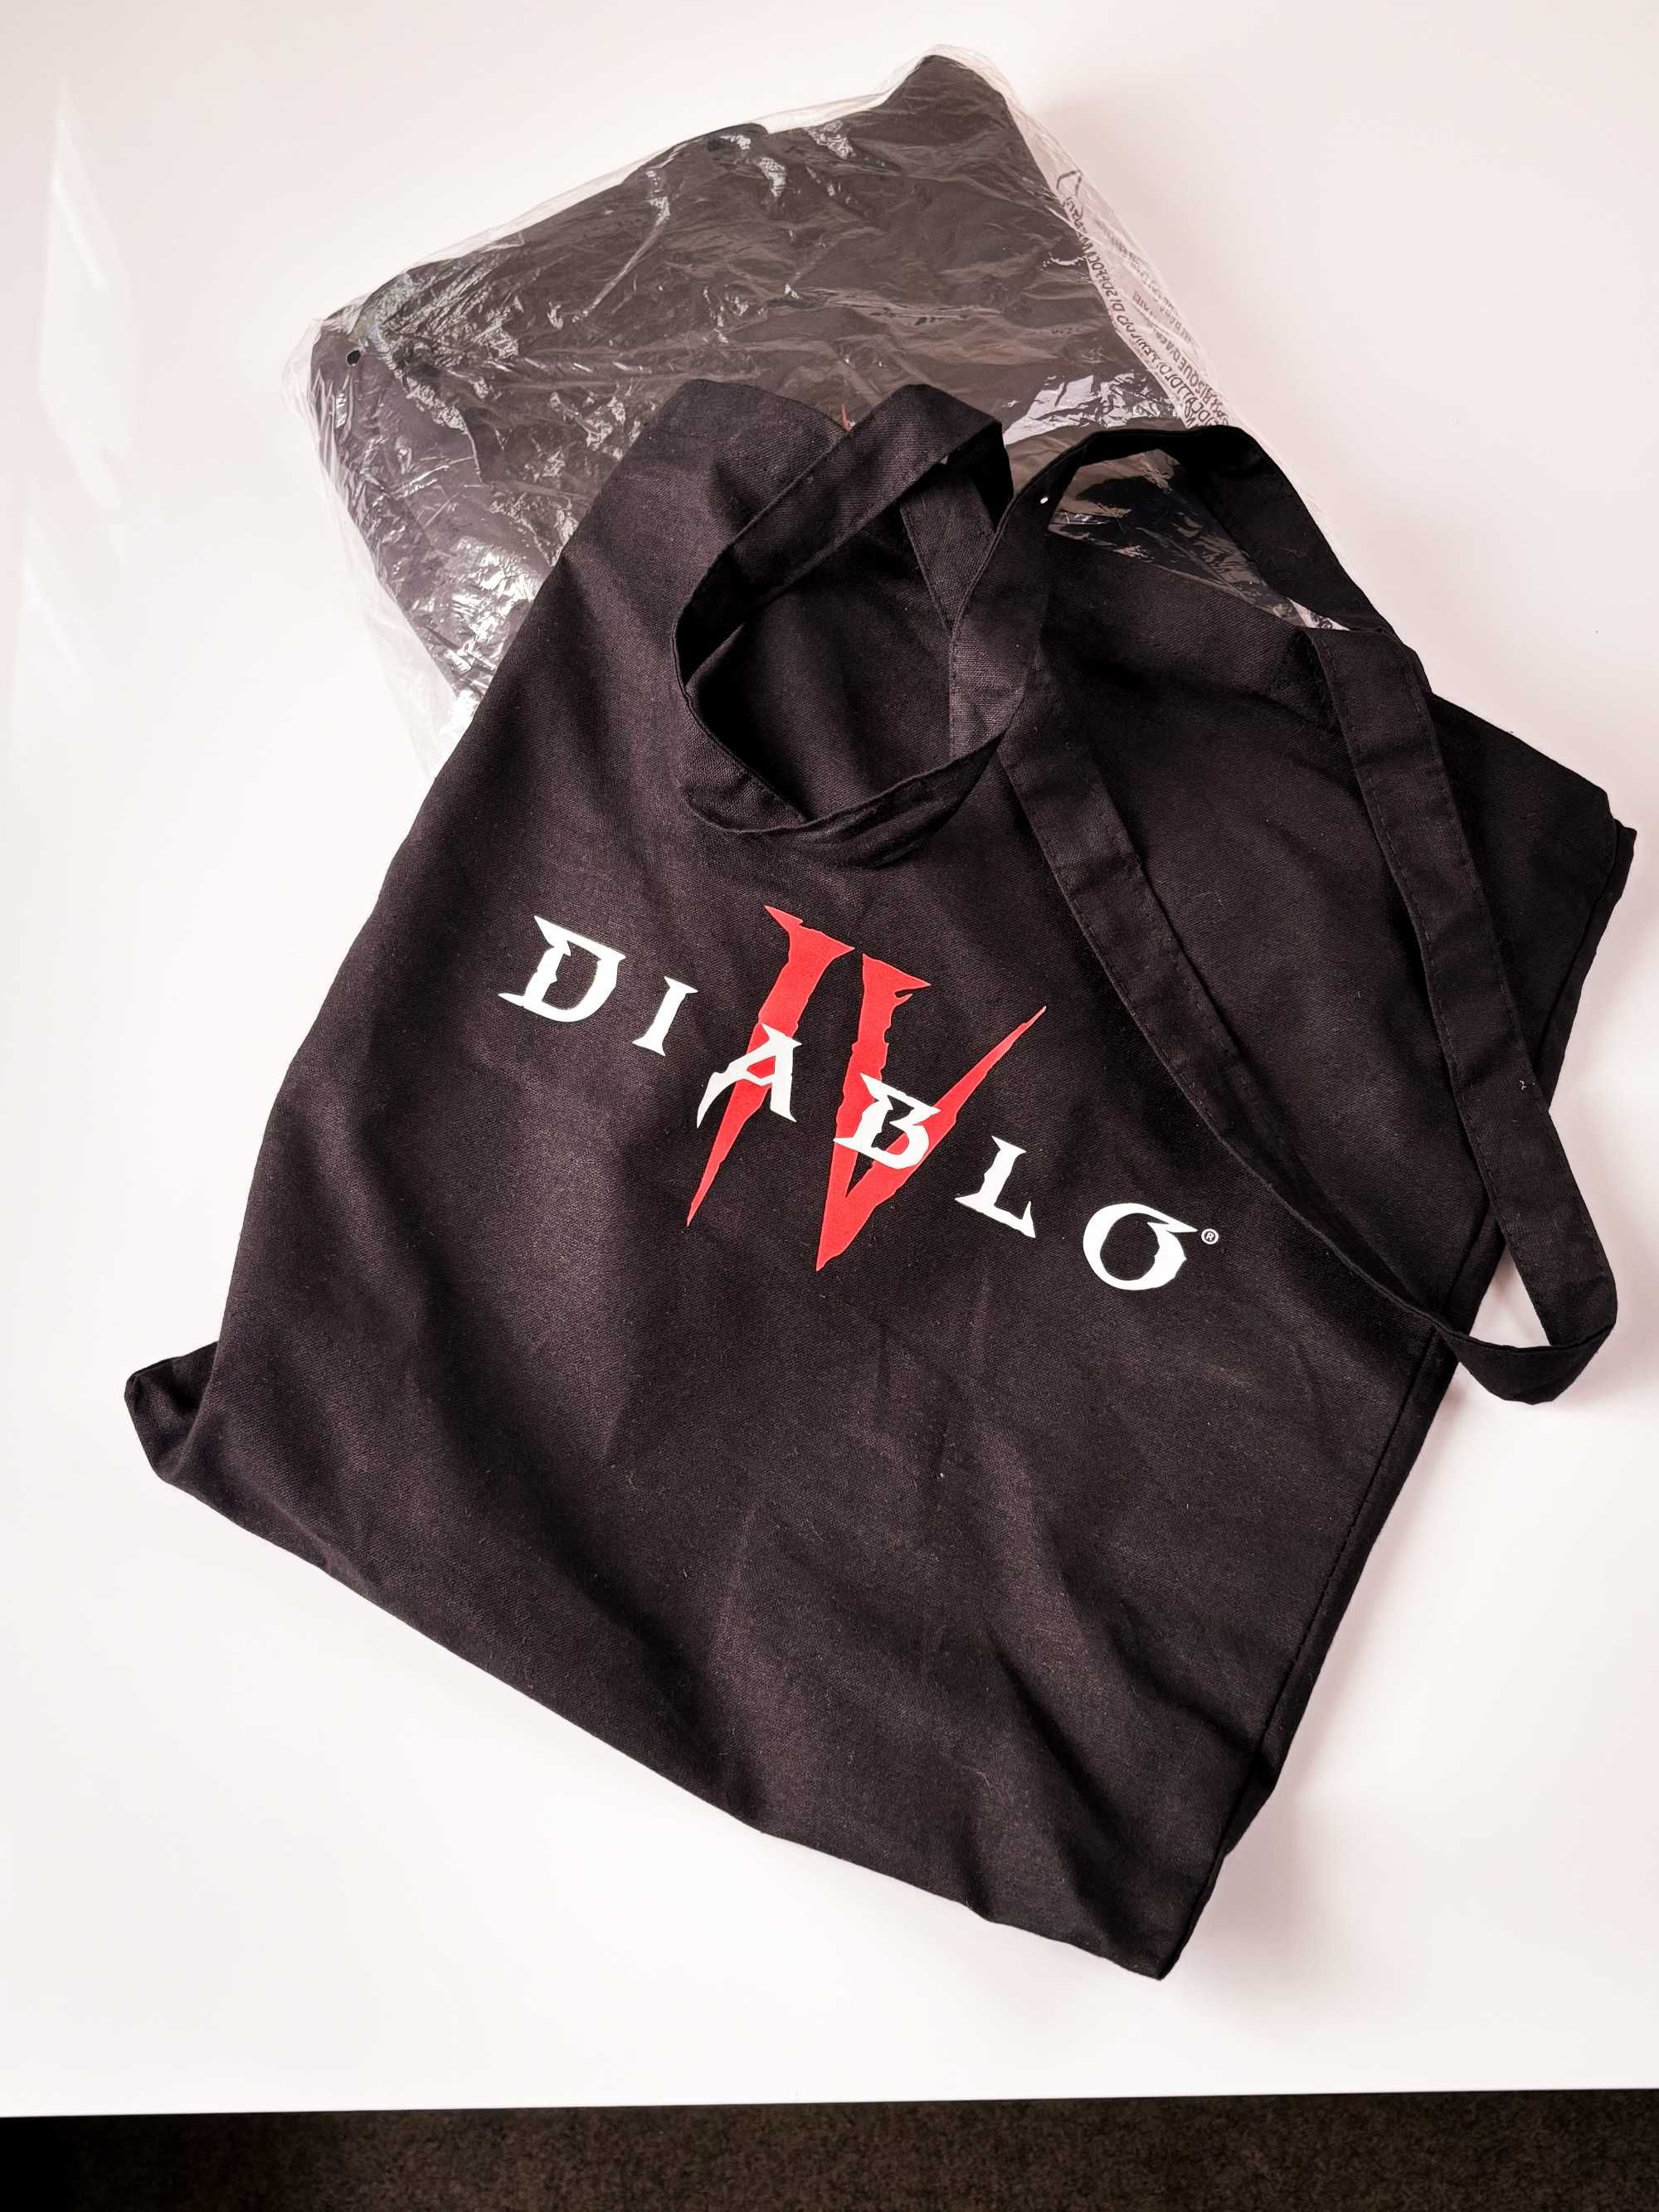 Merch Diablo IV - bluza, 2x czapka, siatka + gadżety